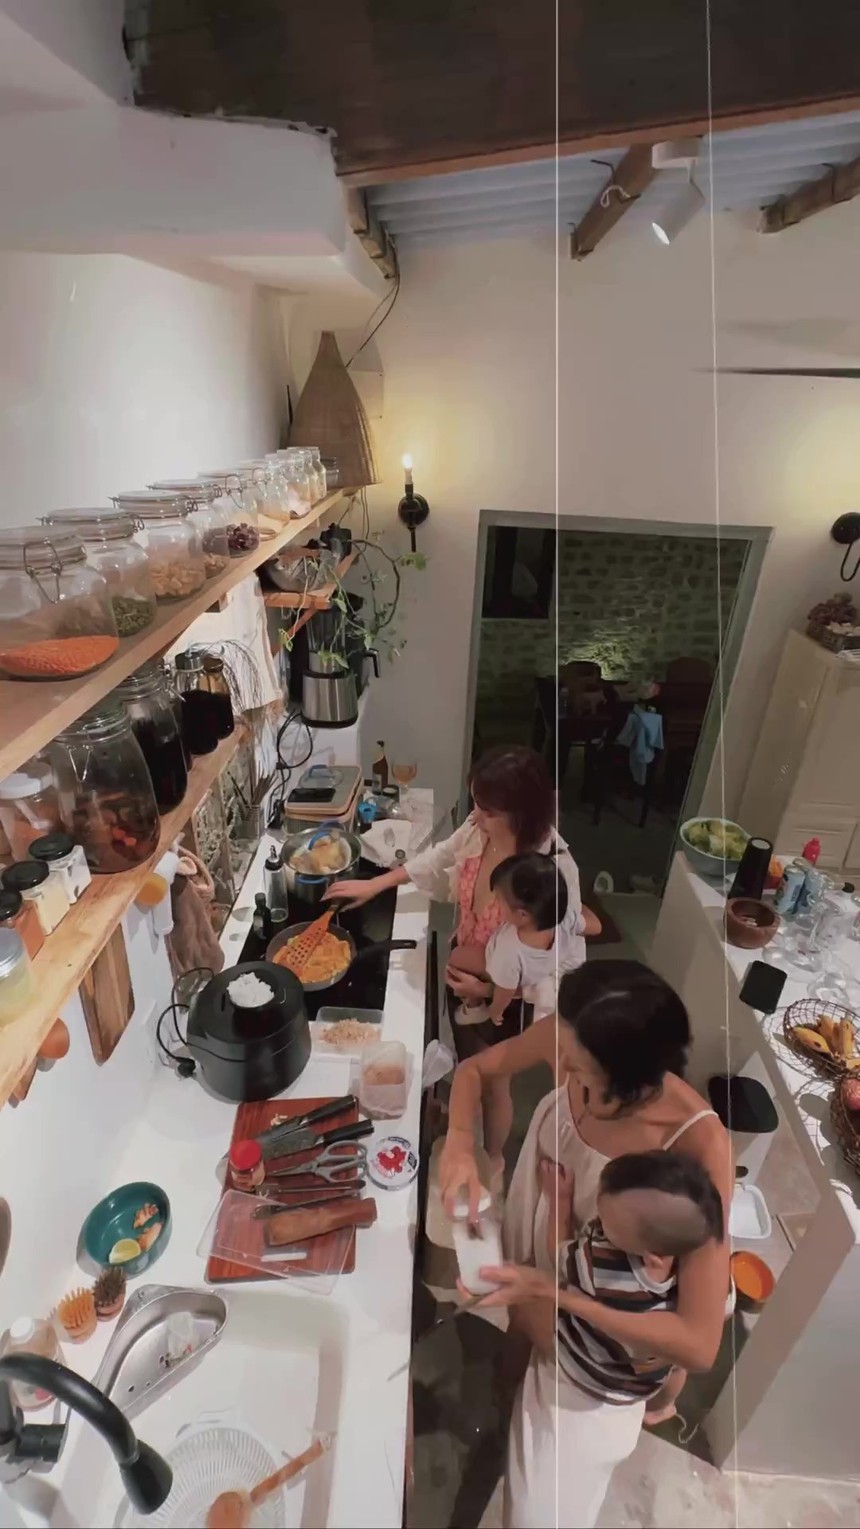 Thú vị gian bếp của vợ chồng Decao - Lâm Minh: Cửa sổ là máy hút mùi, bàn ăn có nơi ngắm cỏ lau